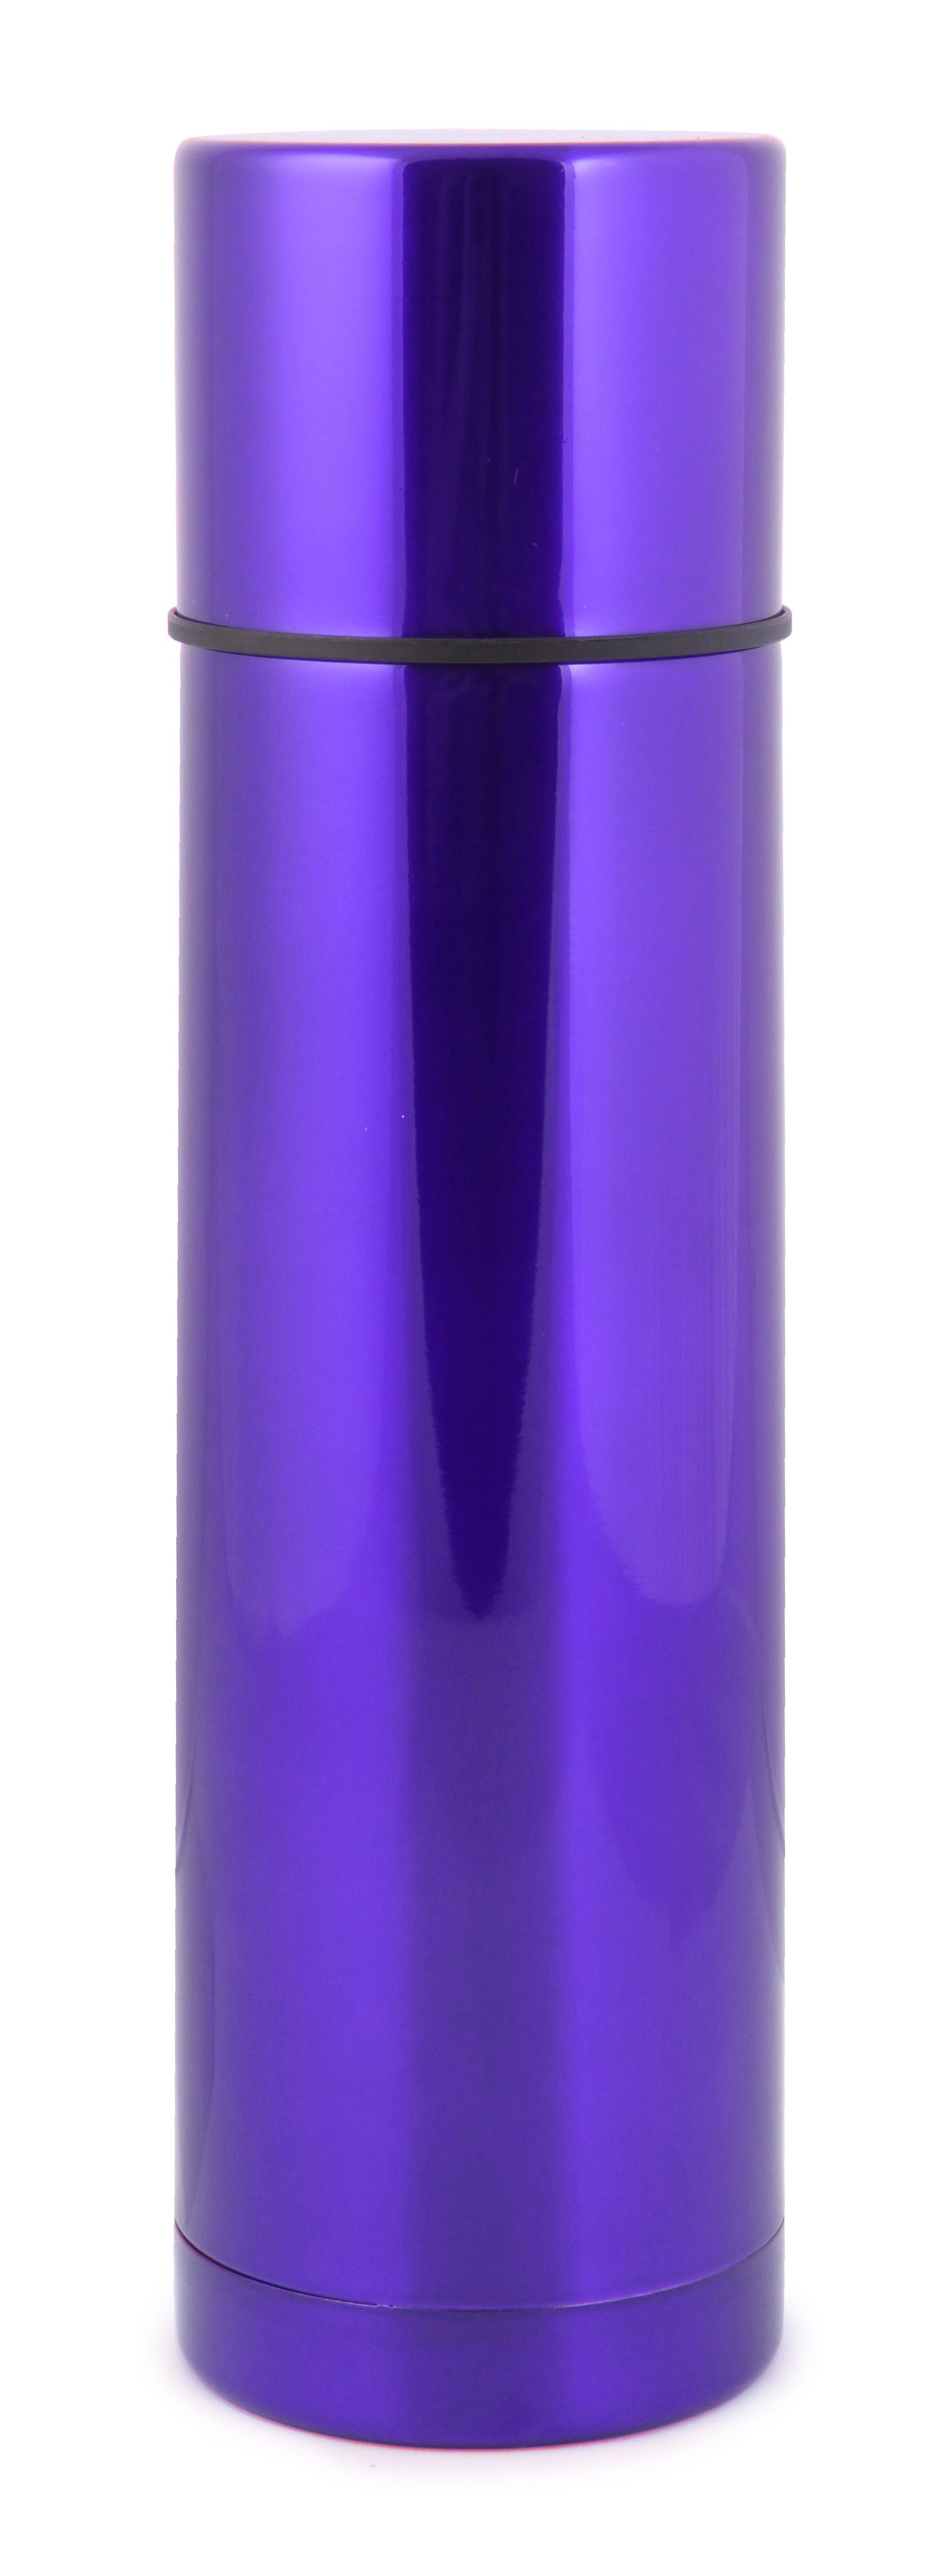 Термос Bergamo, 750 мл, фіолетовий (7927-9) - фото 1